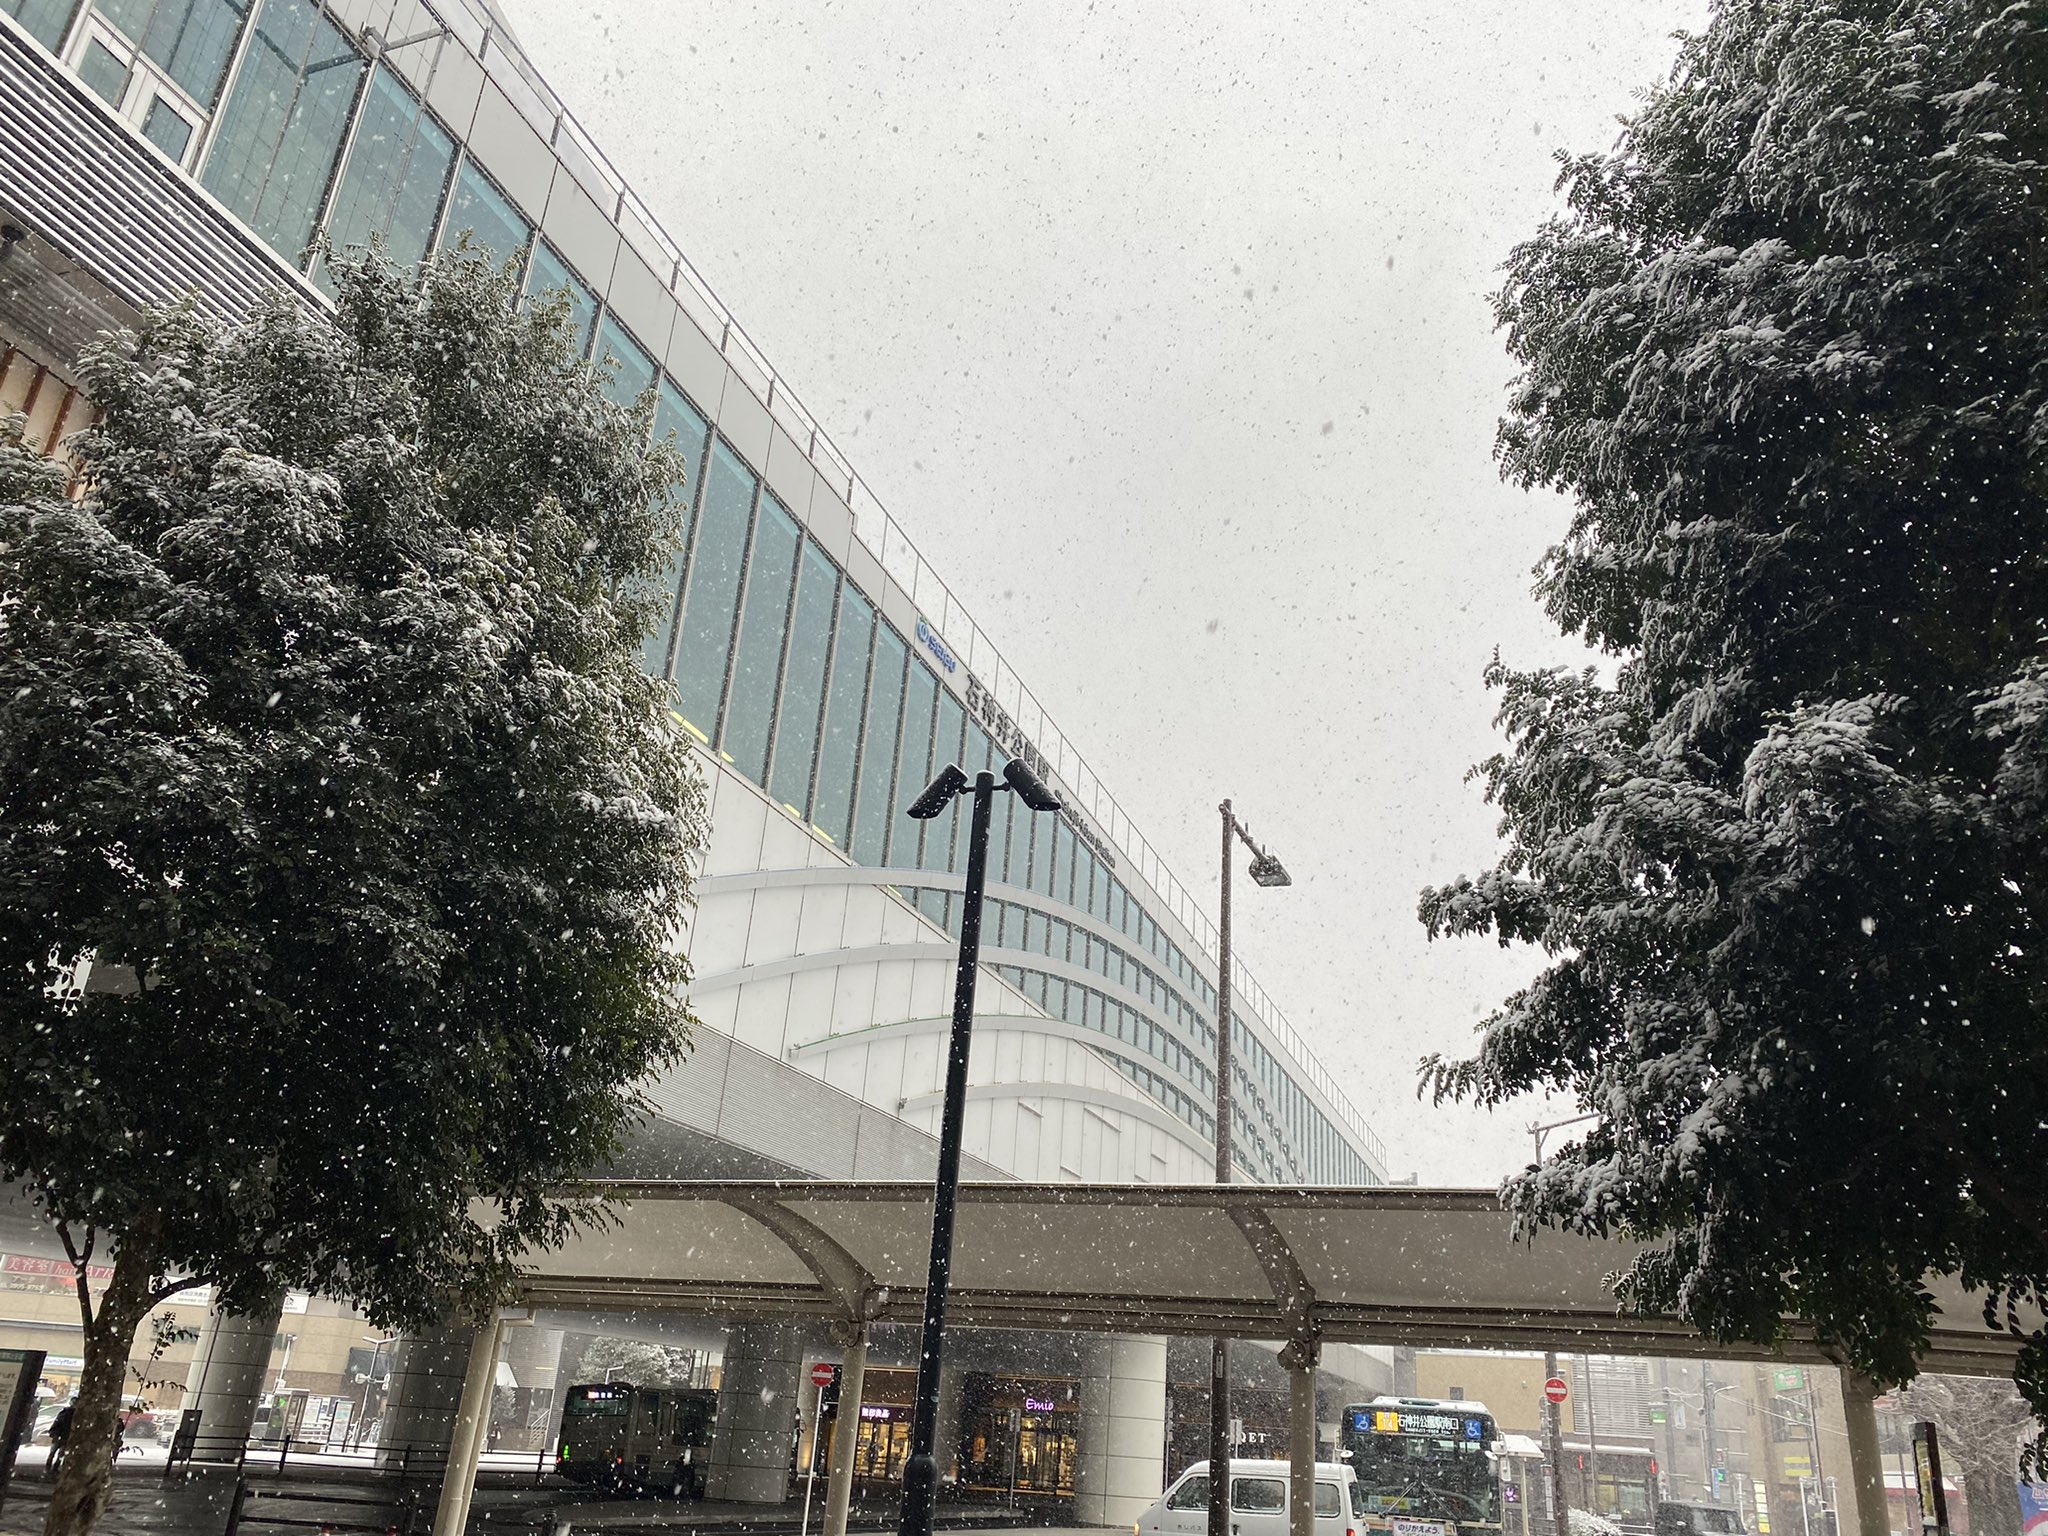 ねりま観光センター 雪の日 その2 16時の石神井公園駅前です かなり積もってきました 練馬区 石神井公園 積雪 T Co Eyindrtbzl Twitter